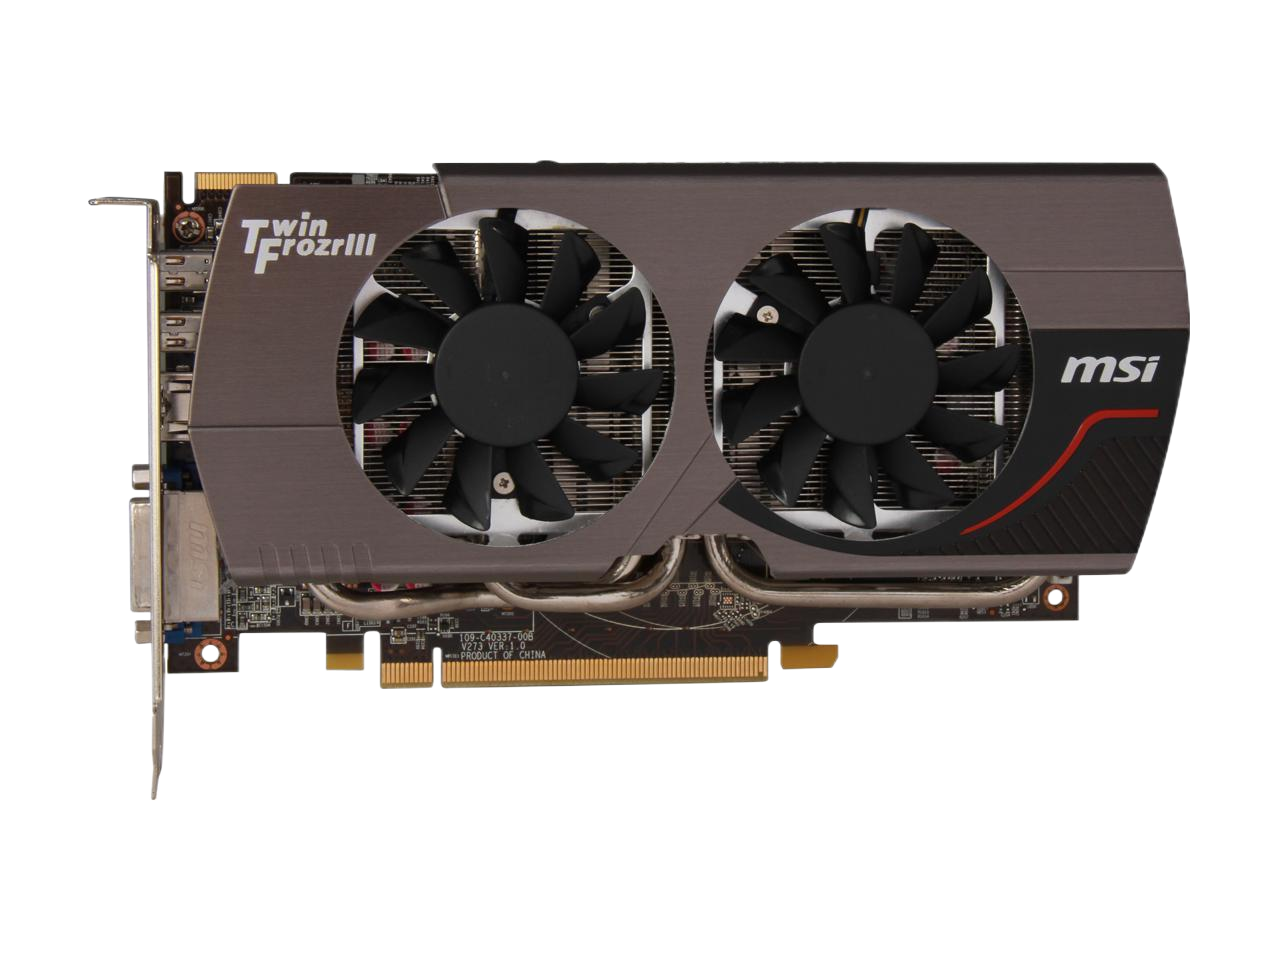 MSI Radeon HD 7850 2GB GDDR5 PCI Express 3.0 x16 CrossFireX Support Video Card R7850 Twin Frozr 2GD5